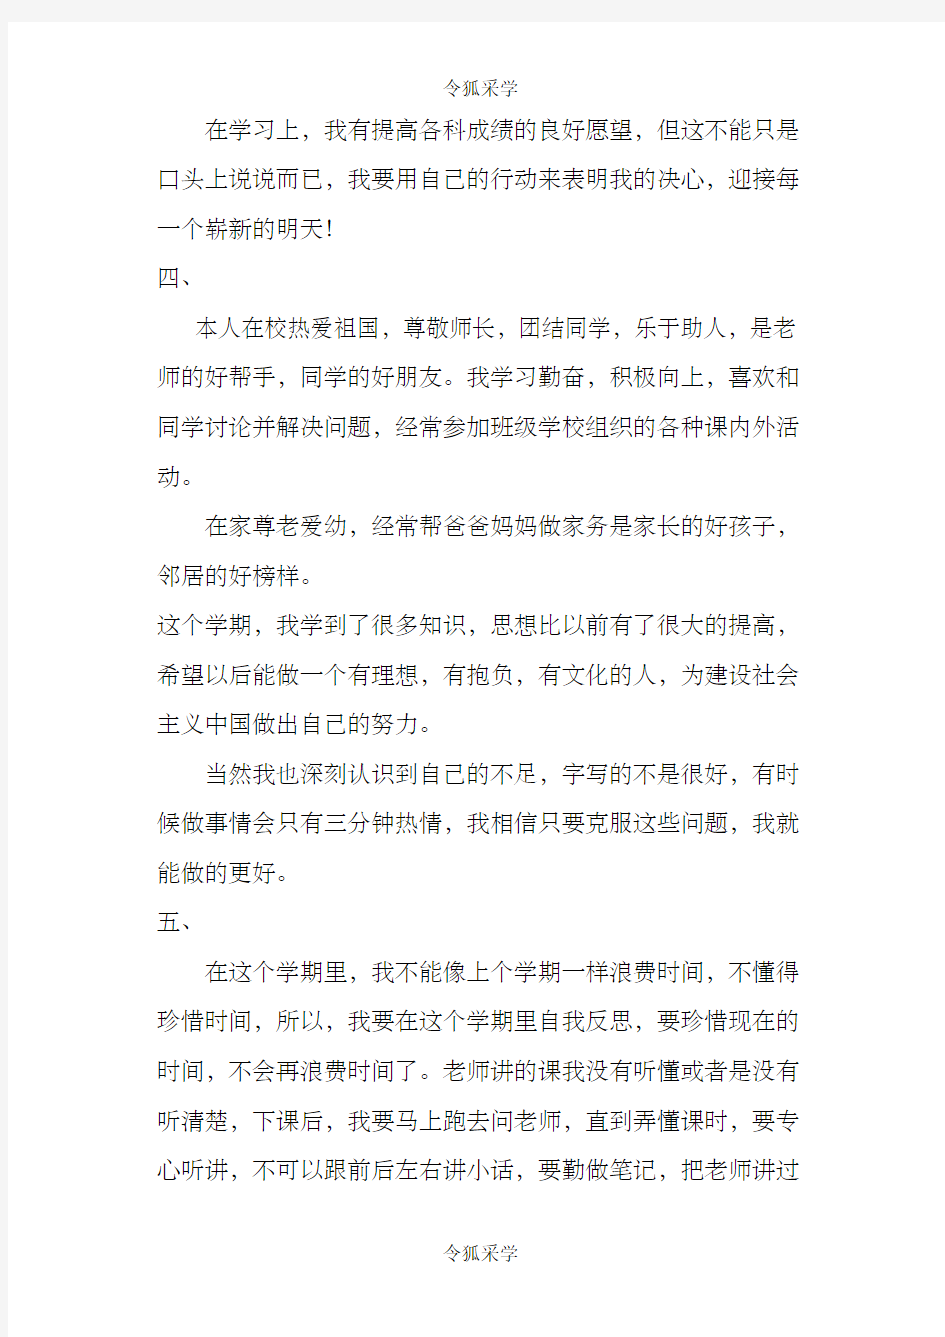 云南省初级中学成长记录手册学生自我反思与评价